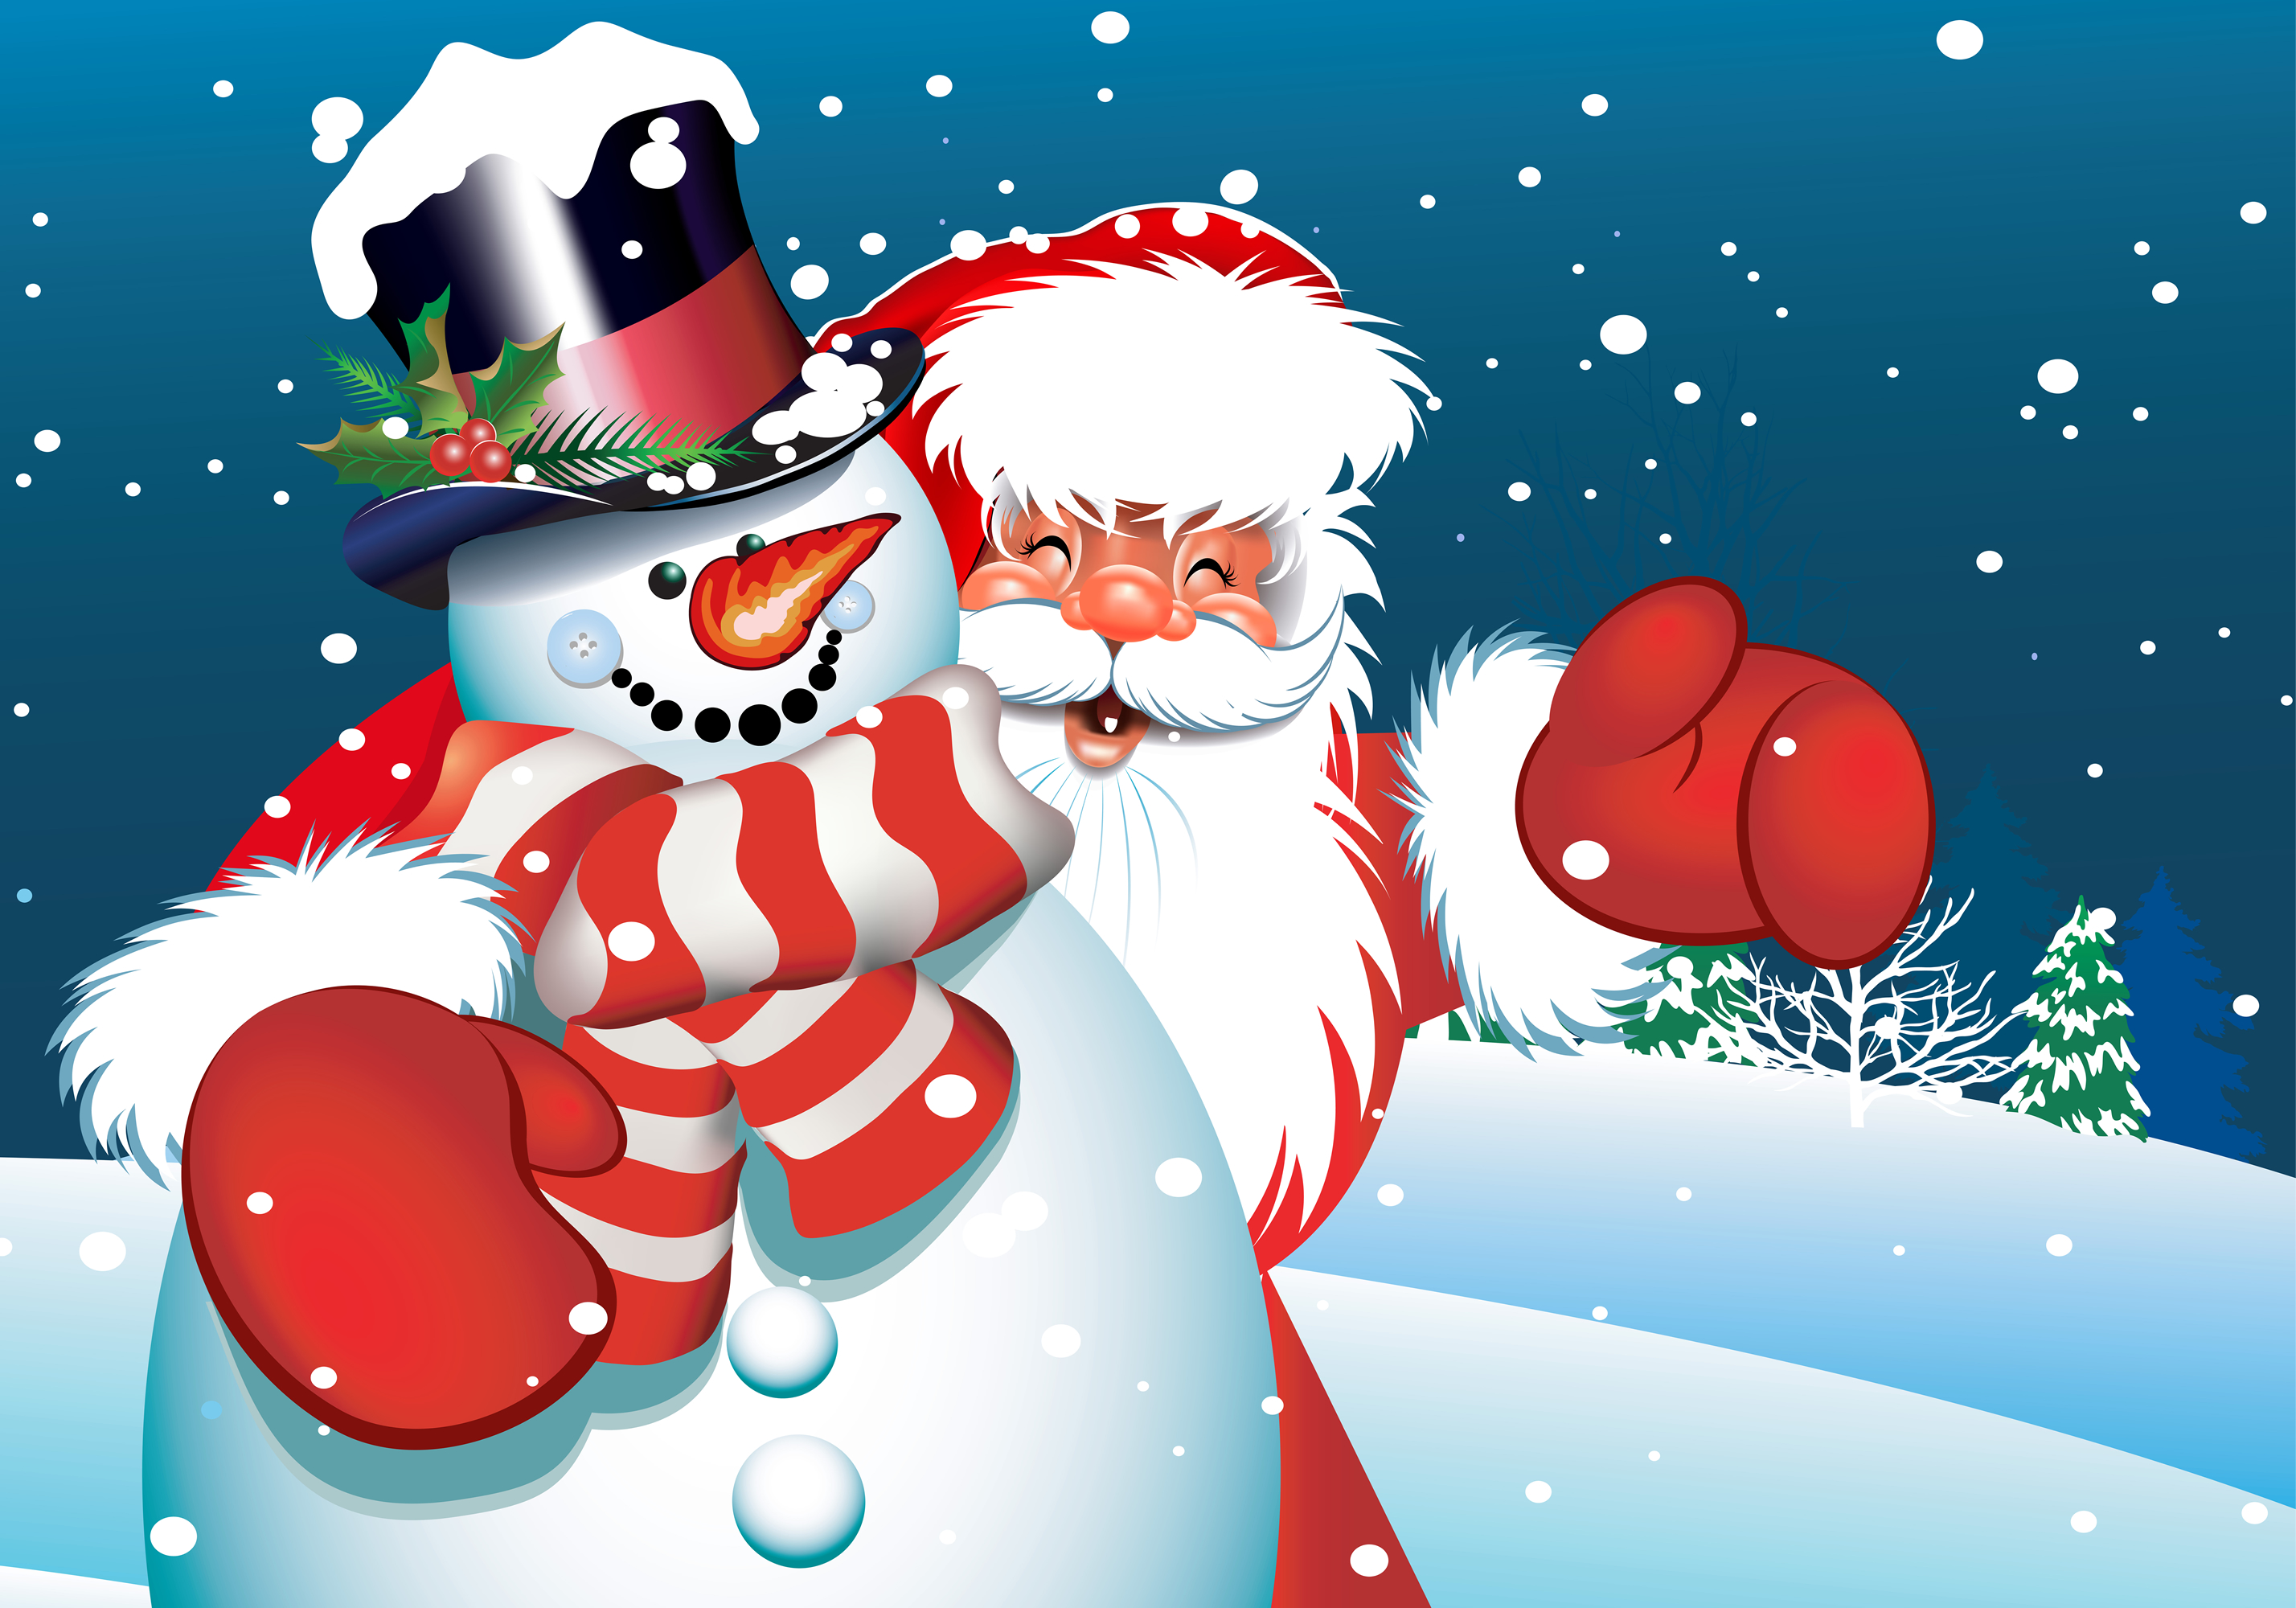 Download wallpaper: Santa Claus, download desktop wallpaper, Santa